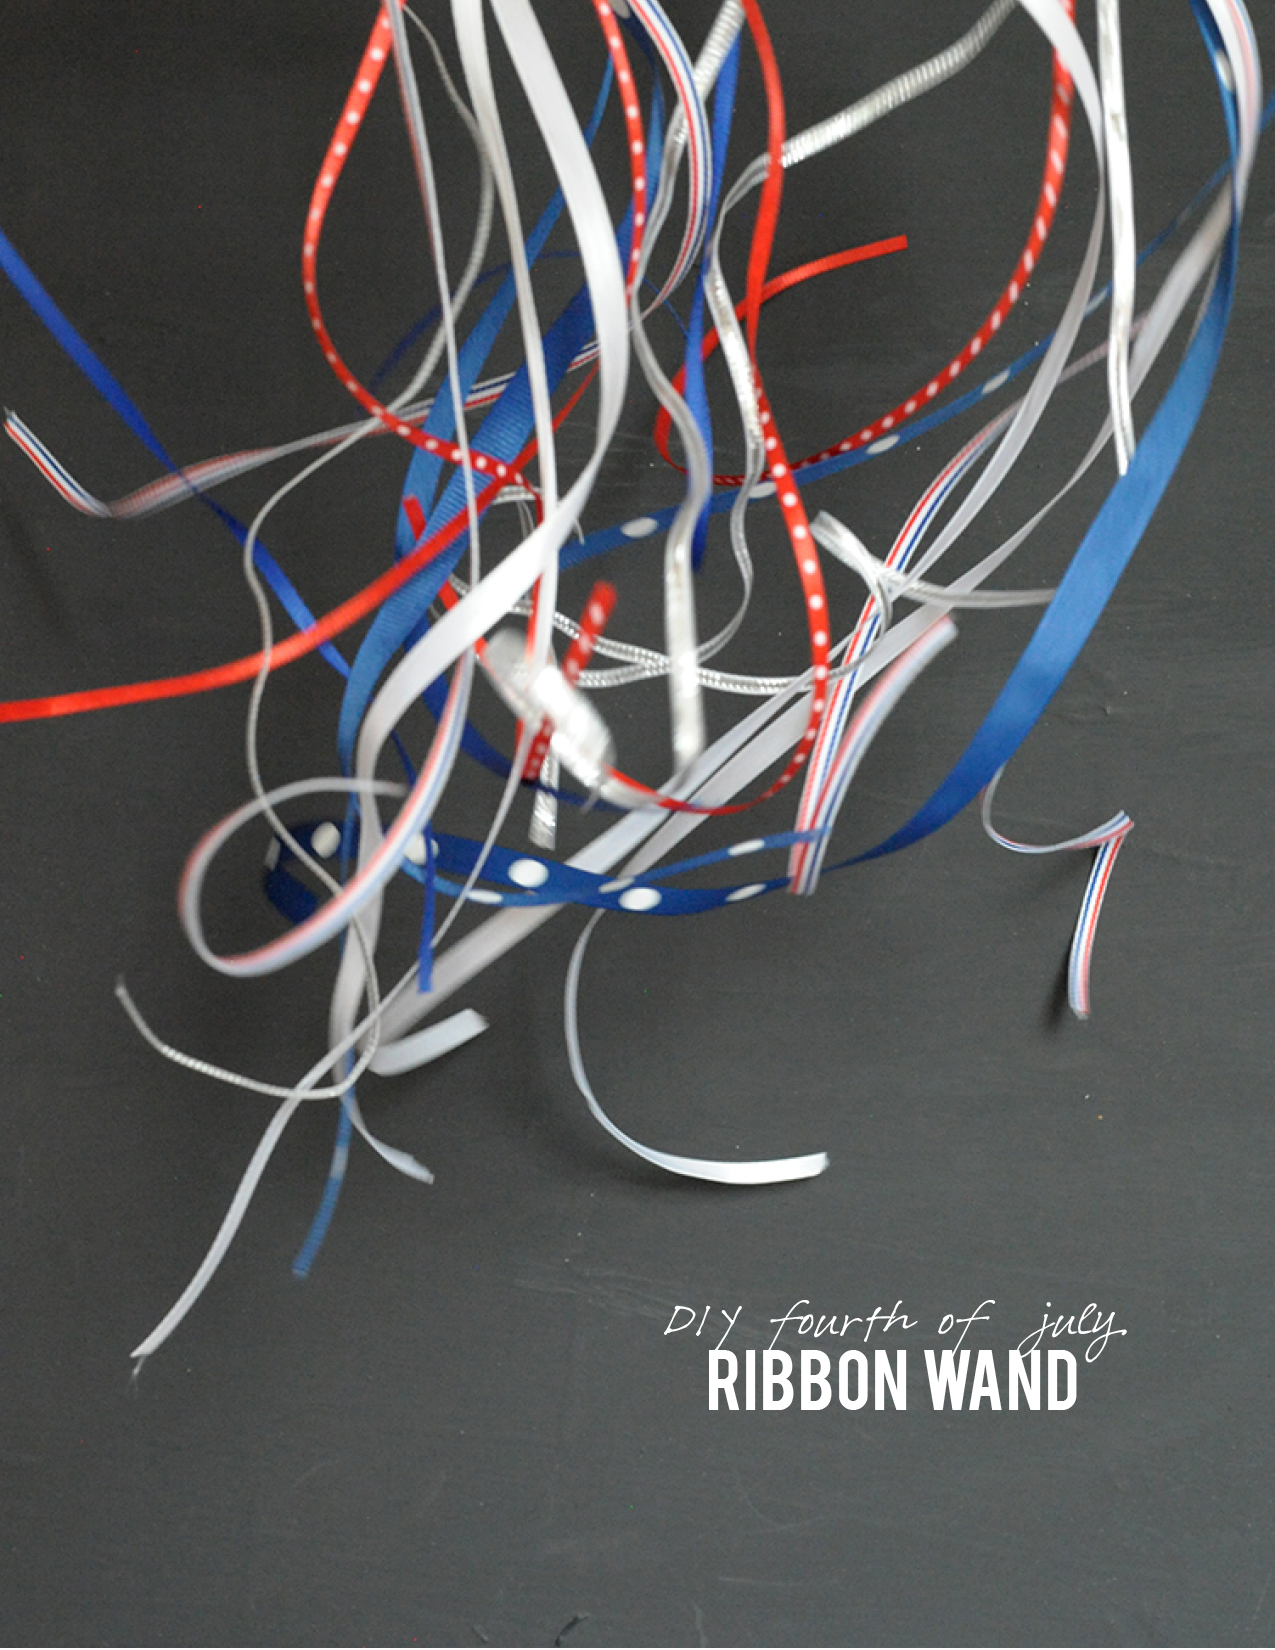 DIY-fourth-of-july-ribbon-wand-main